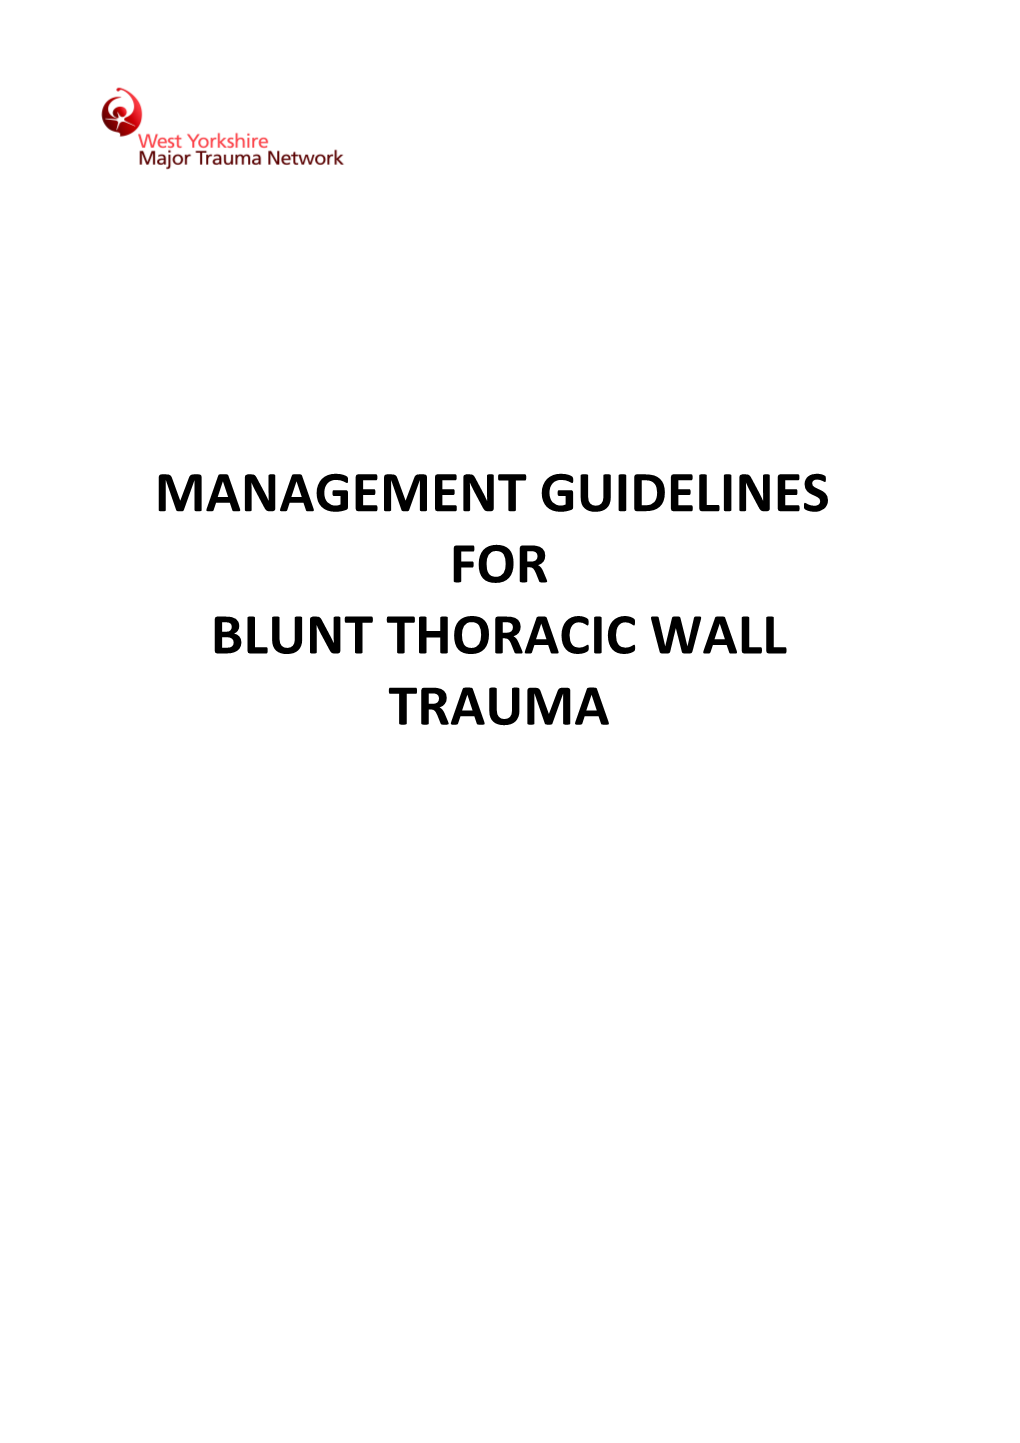 Blunt Thoracic Wall Trauma